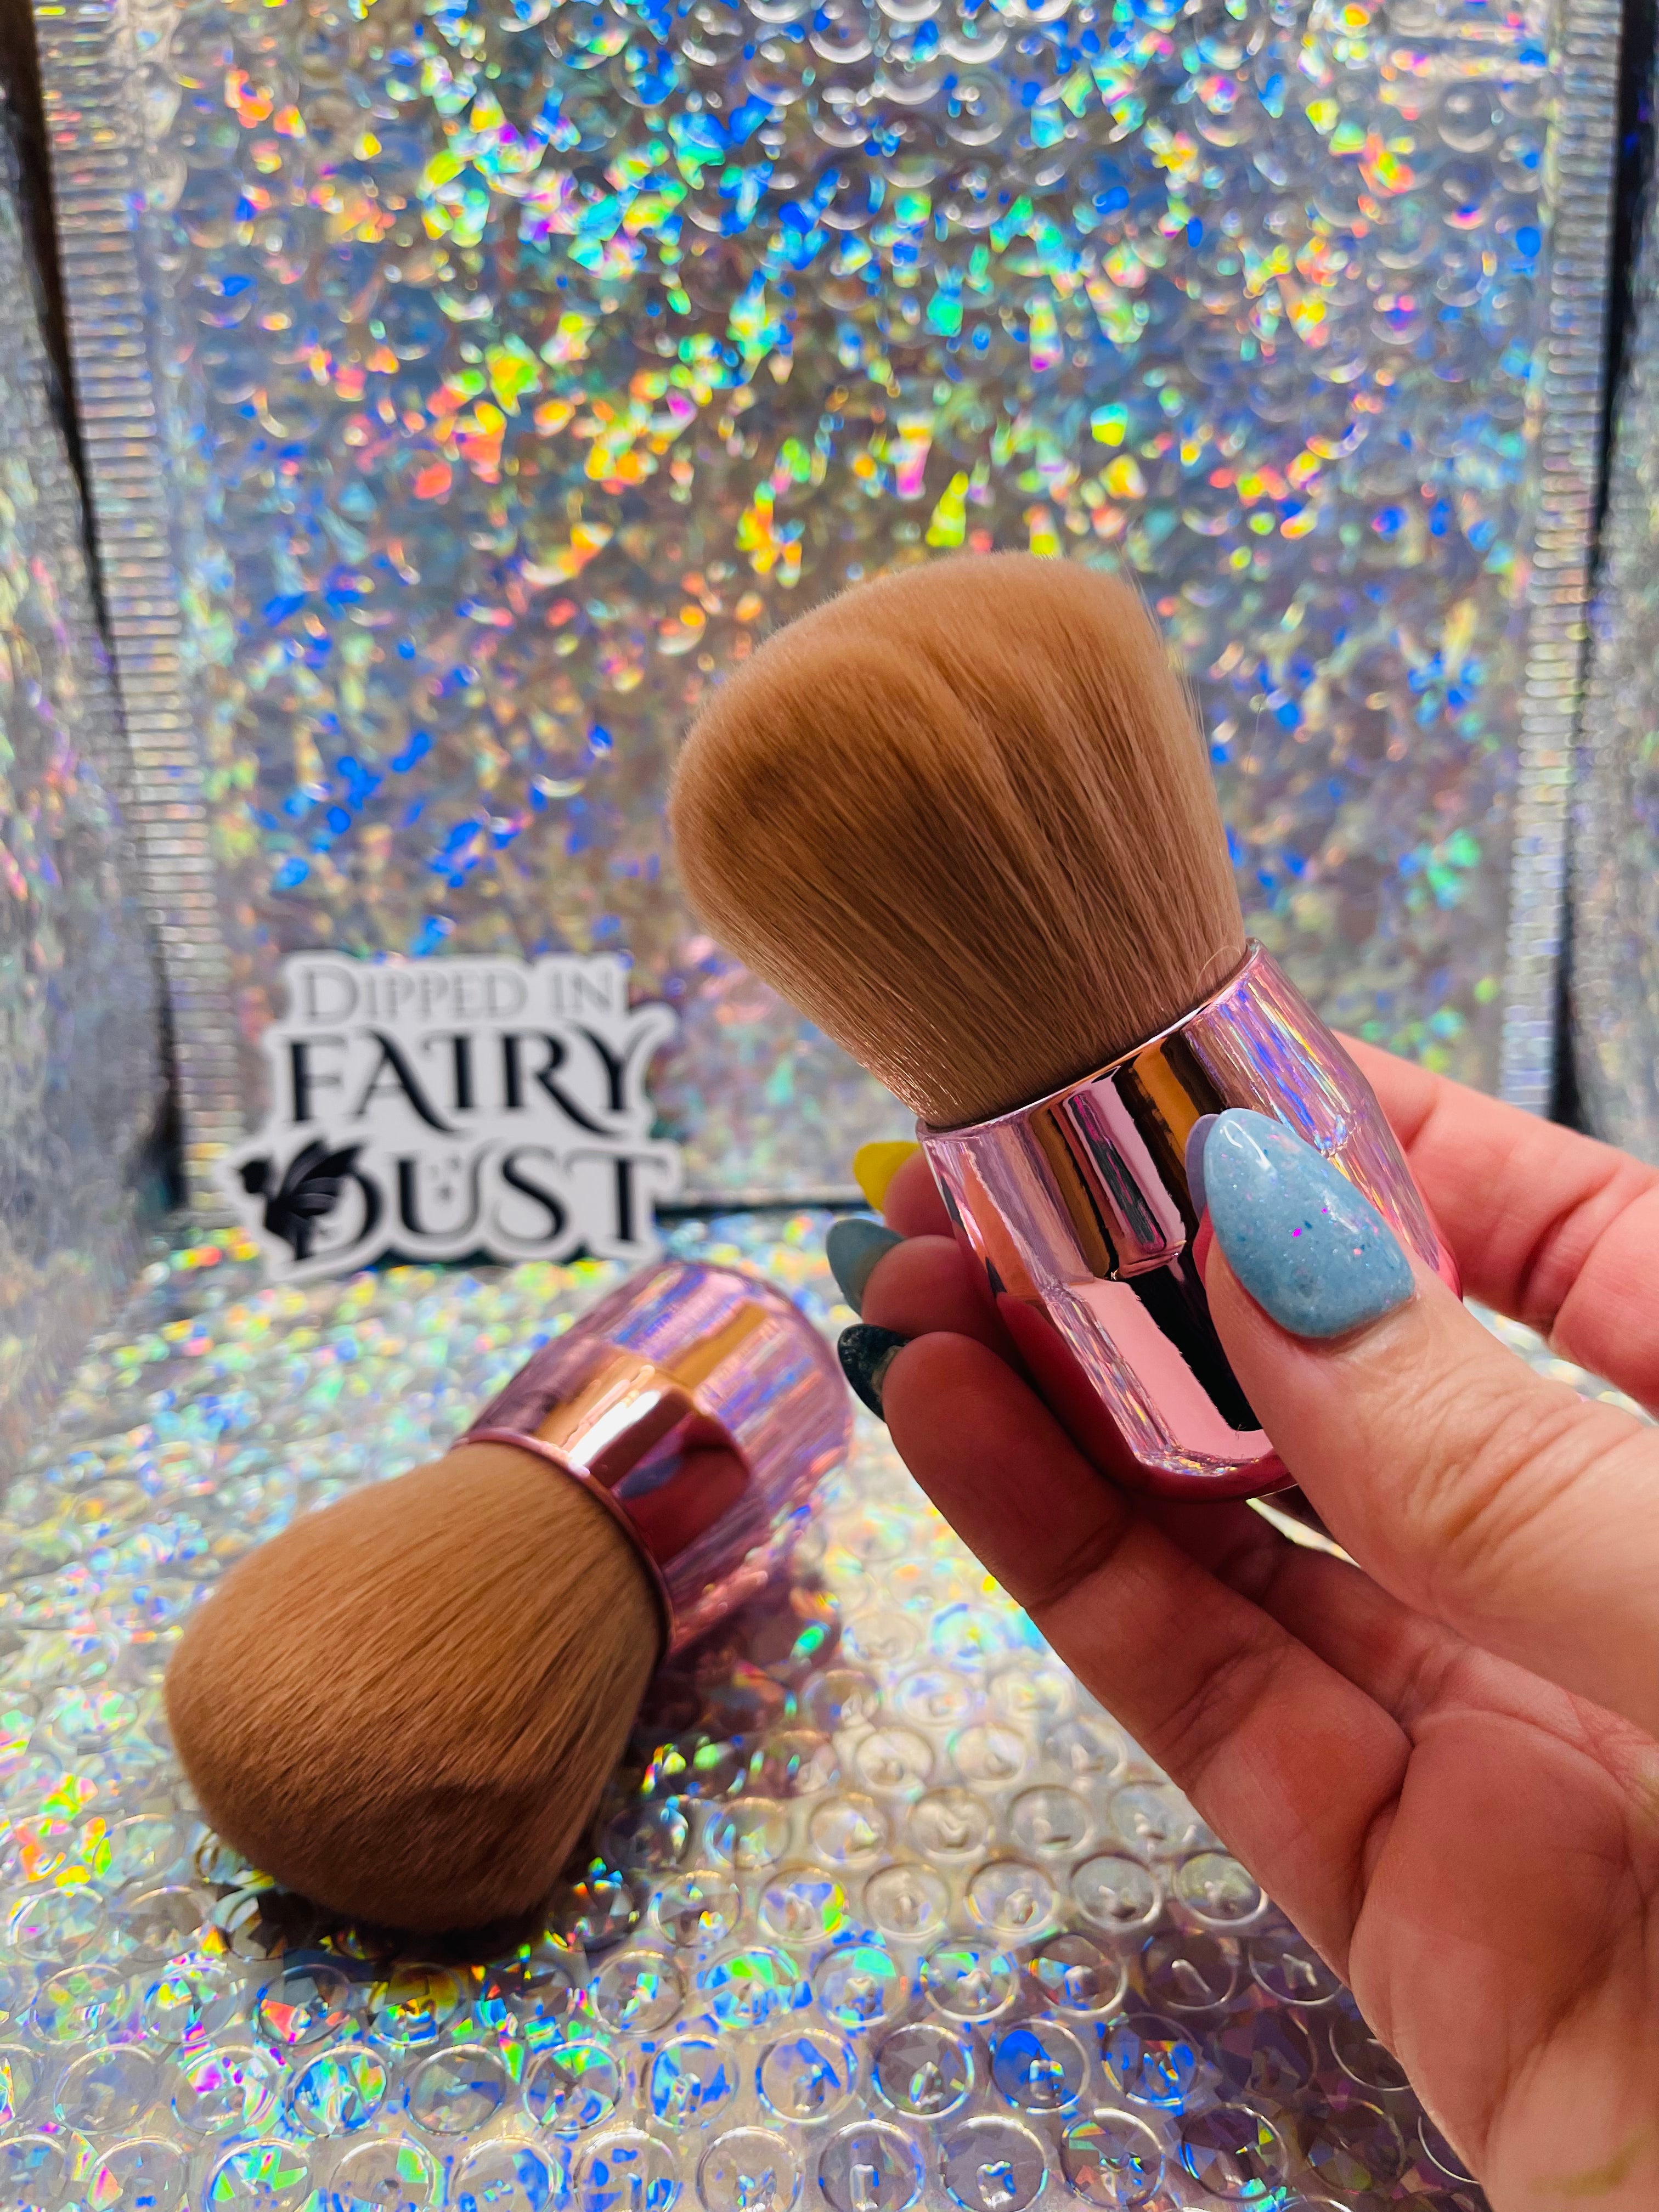 Fairy Dust-er Brush